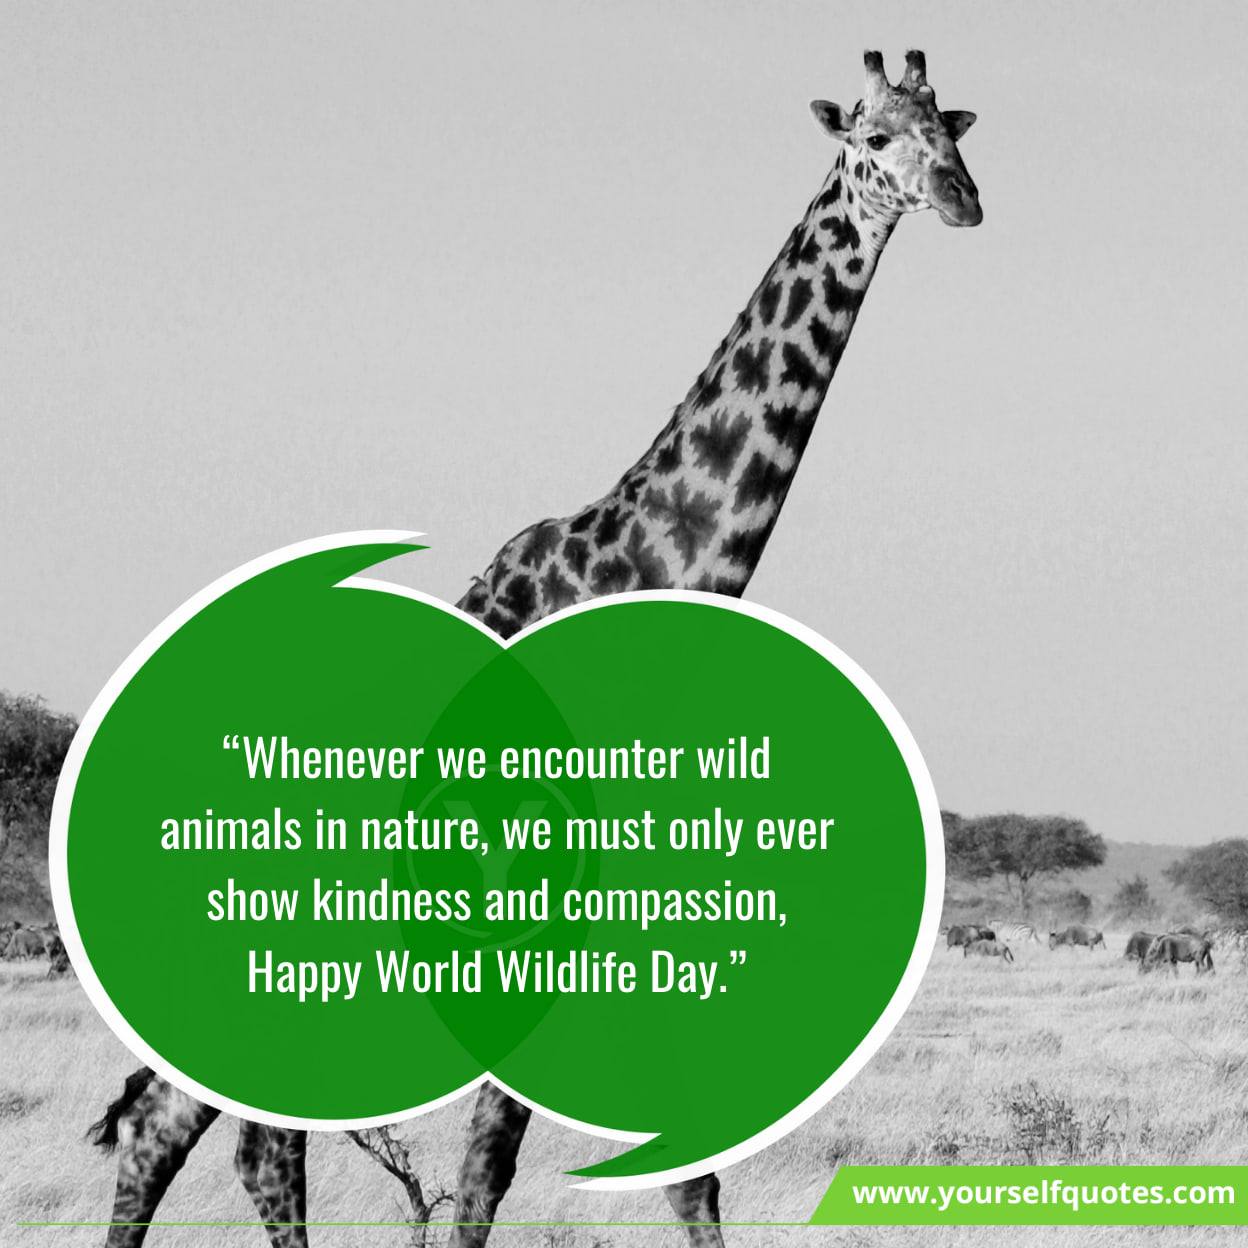 World Wildlife Day Messages & Slogans